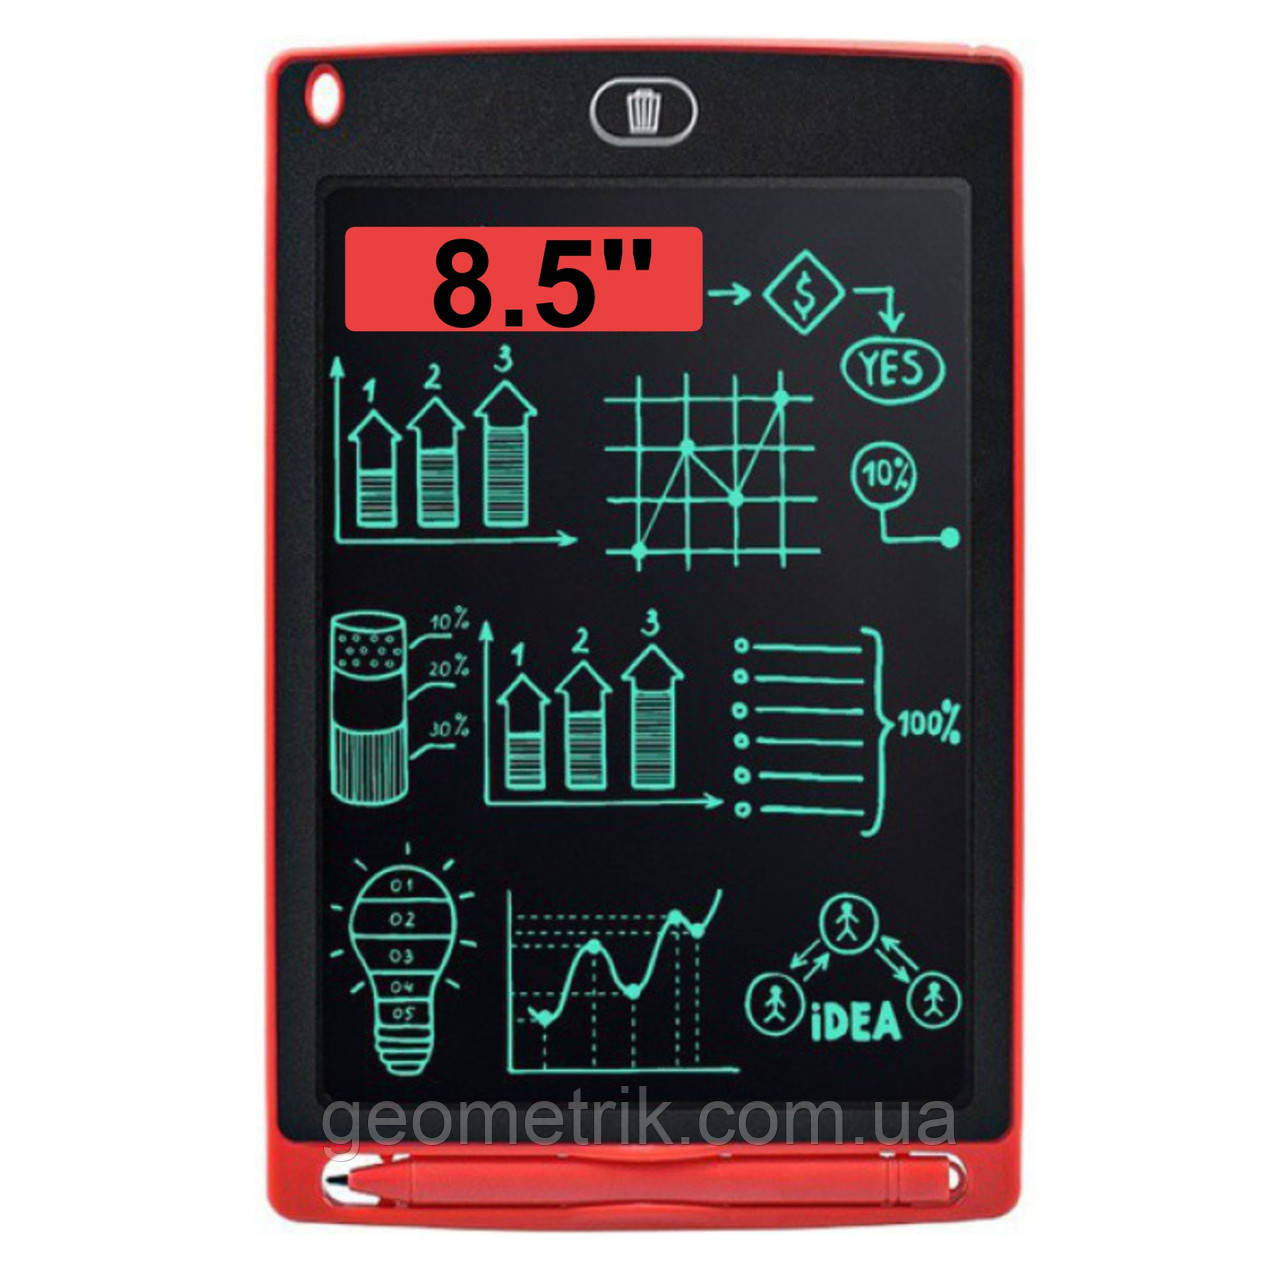 Графічний LCD планшет для малювання 8.5'' | монохромний ЖК планшет | червоний